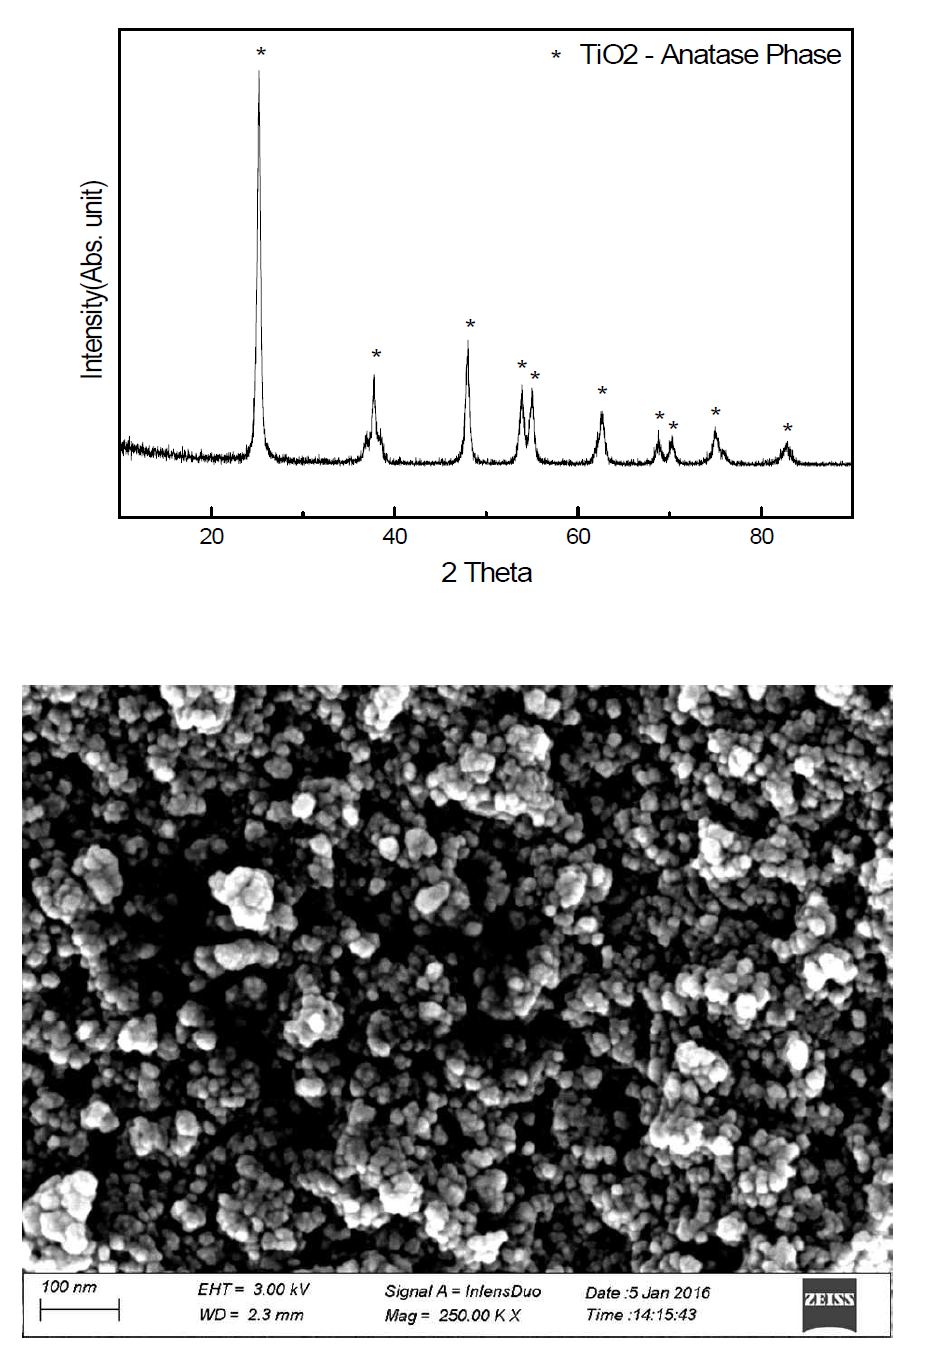 티타늄 하이드록사이드 염 파우더를 이용한 TiO2 의 XRD 및 SEM분석 결과